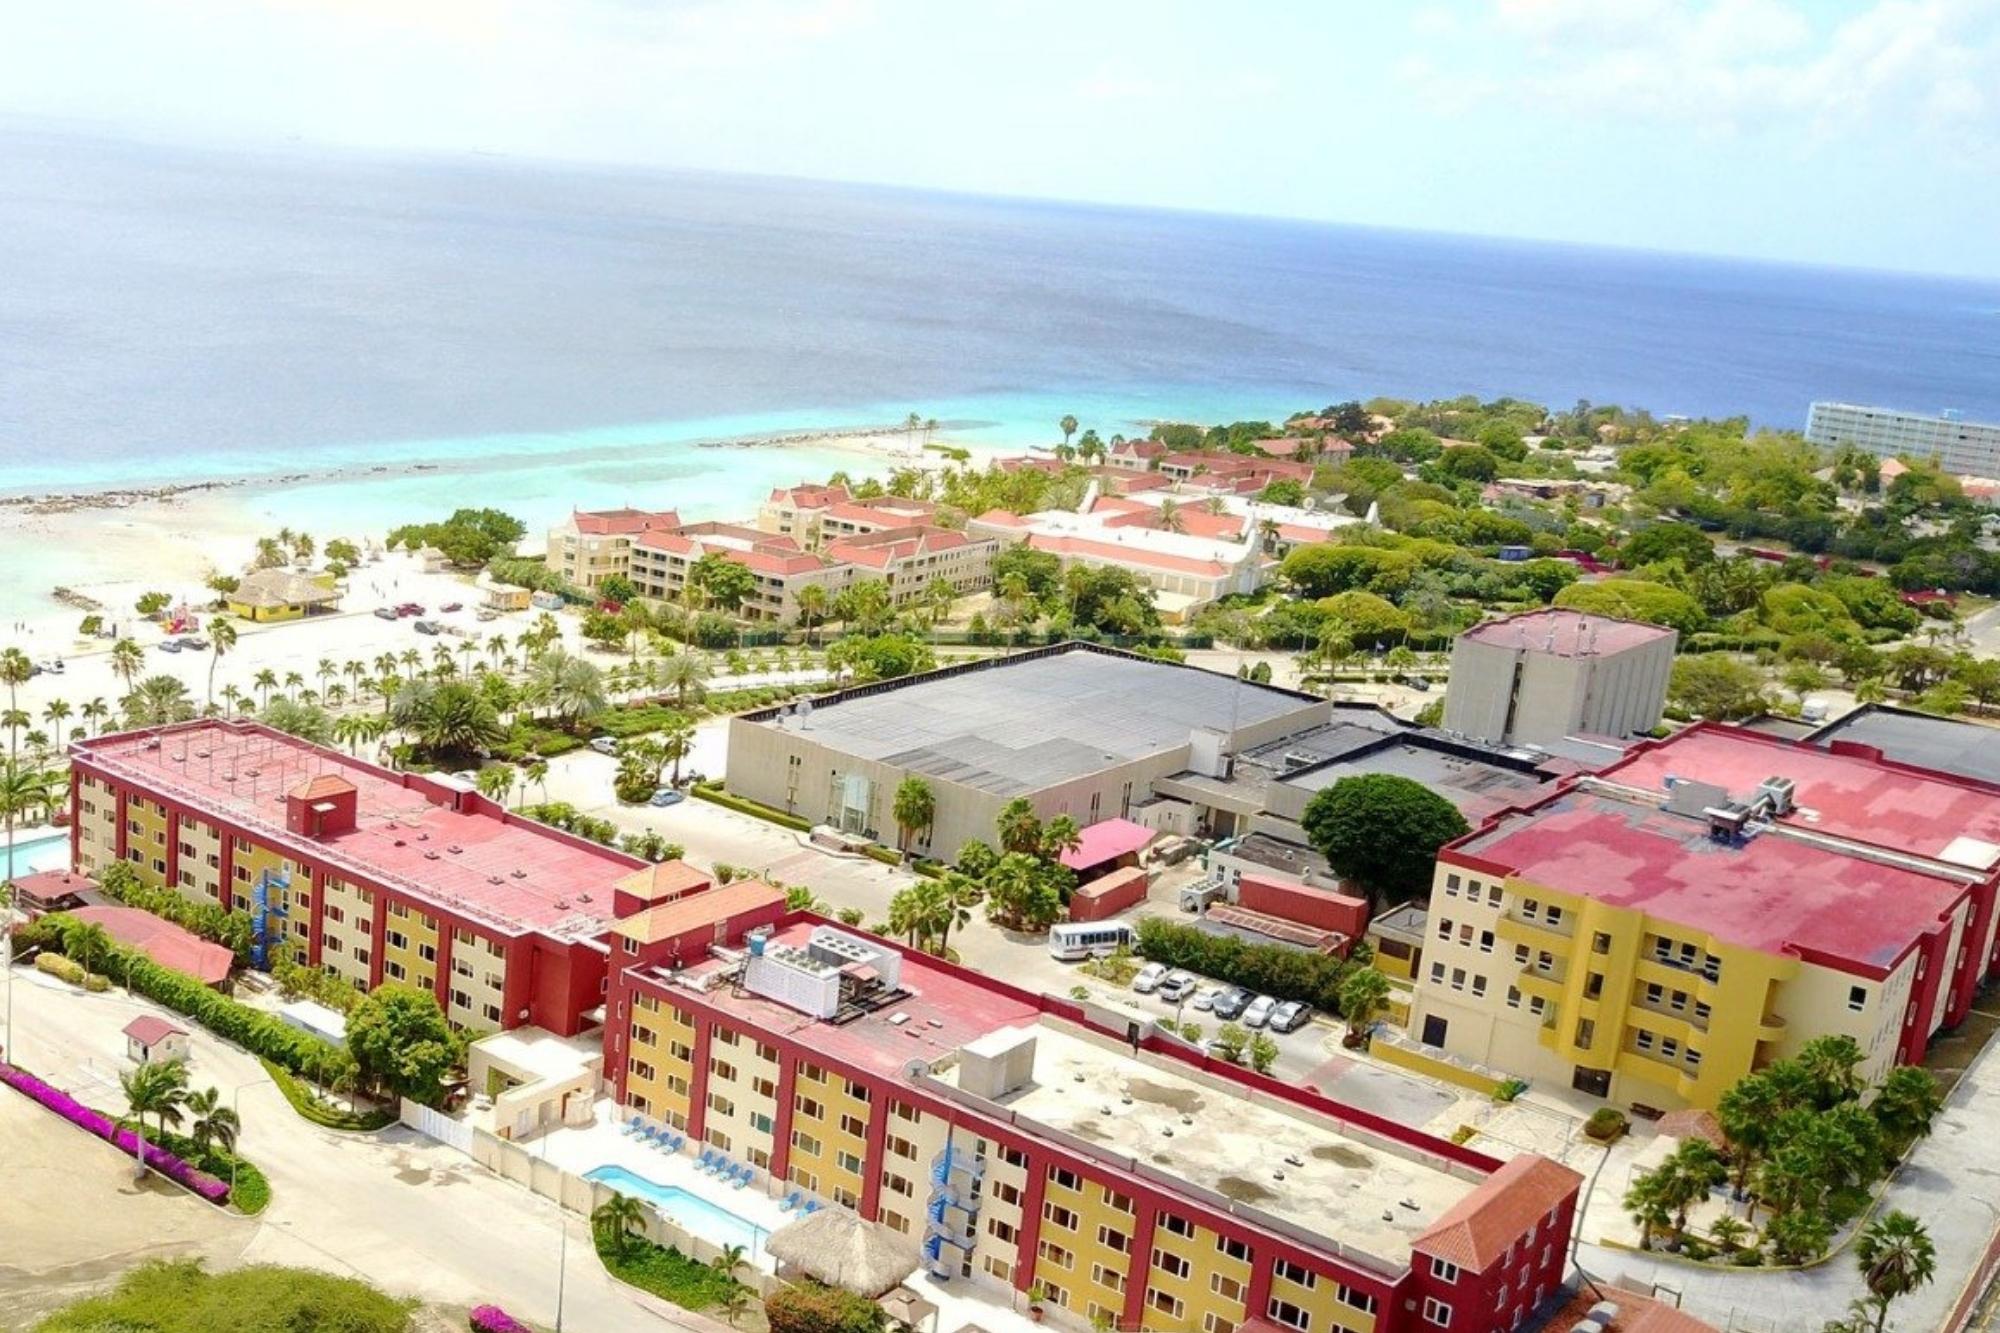 Caribbean Med School – Avalon (1)